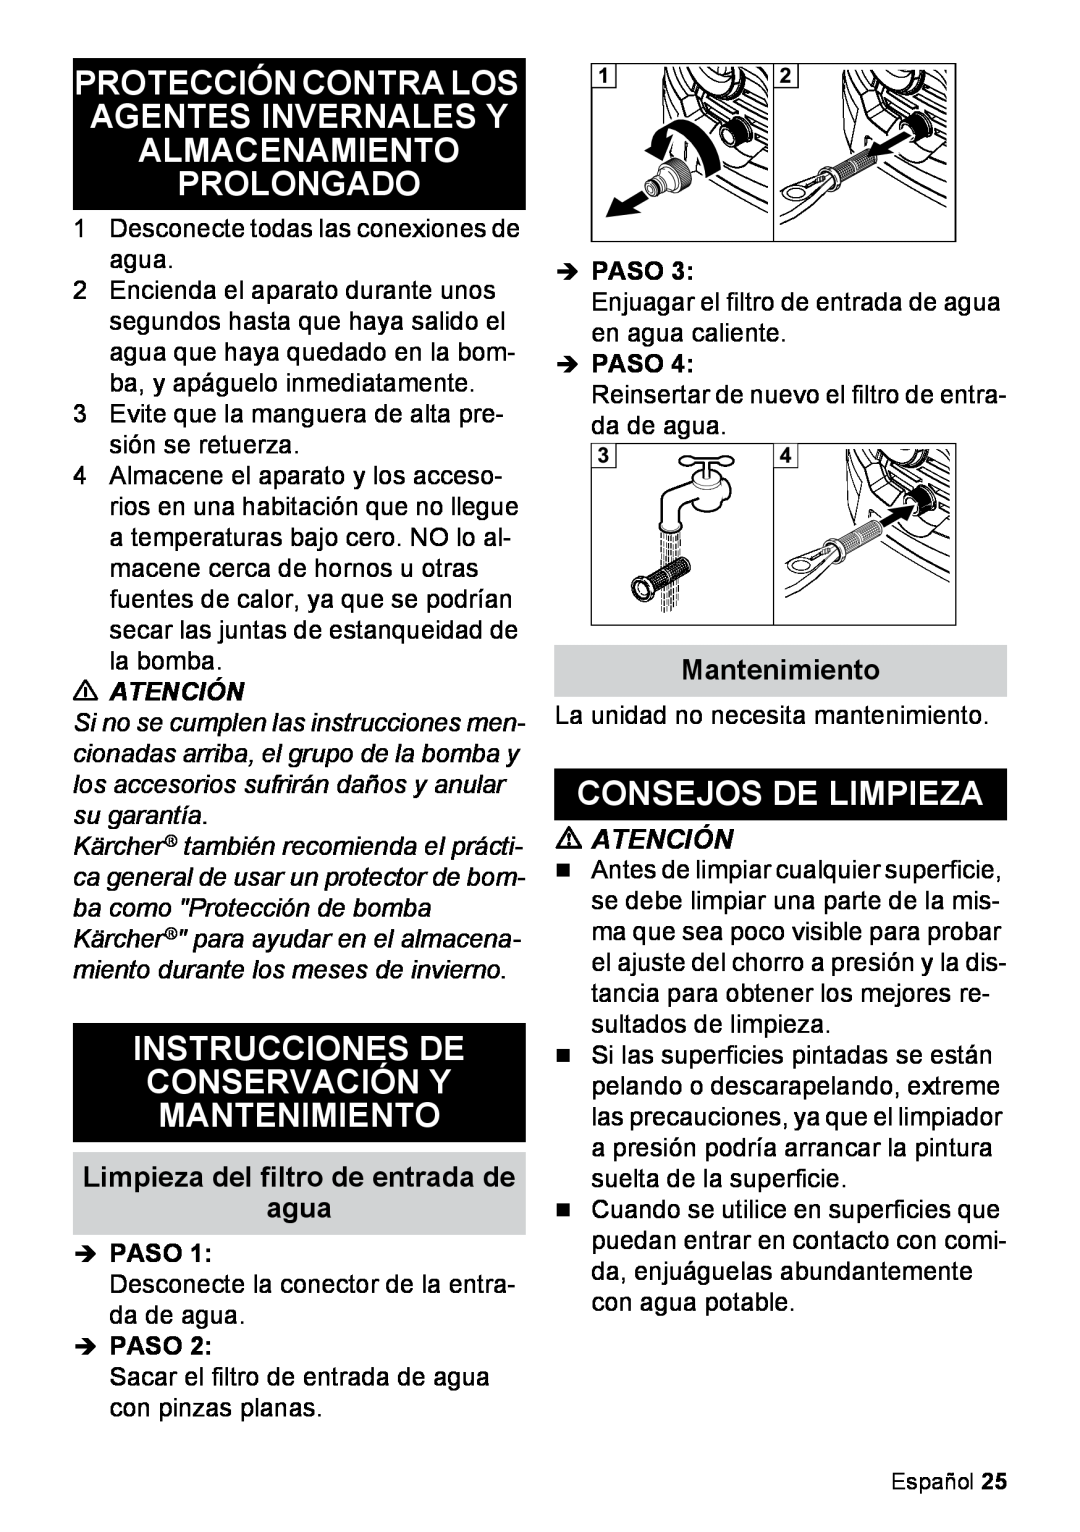 Karcher K 2.425 manual Protección Contra Los Agentes Invernales Y Almacenamiento Prolongado, Consejos De Limpieza, Atención 